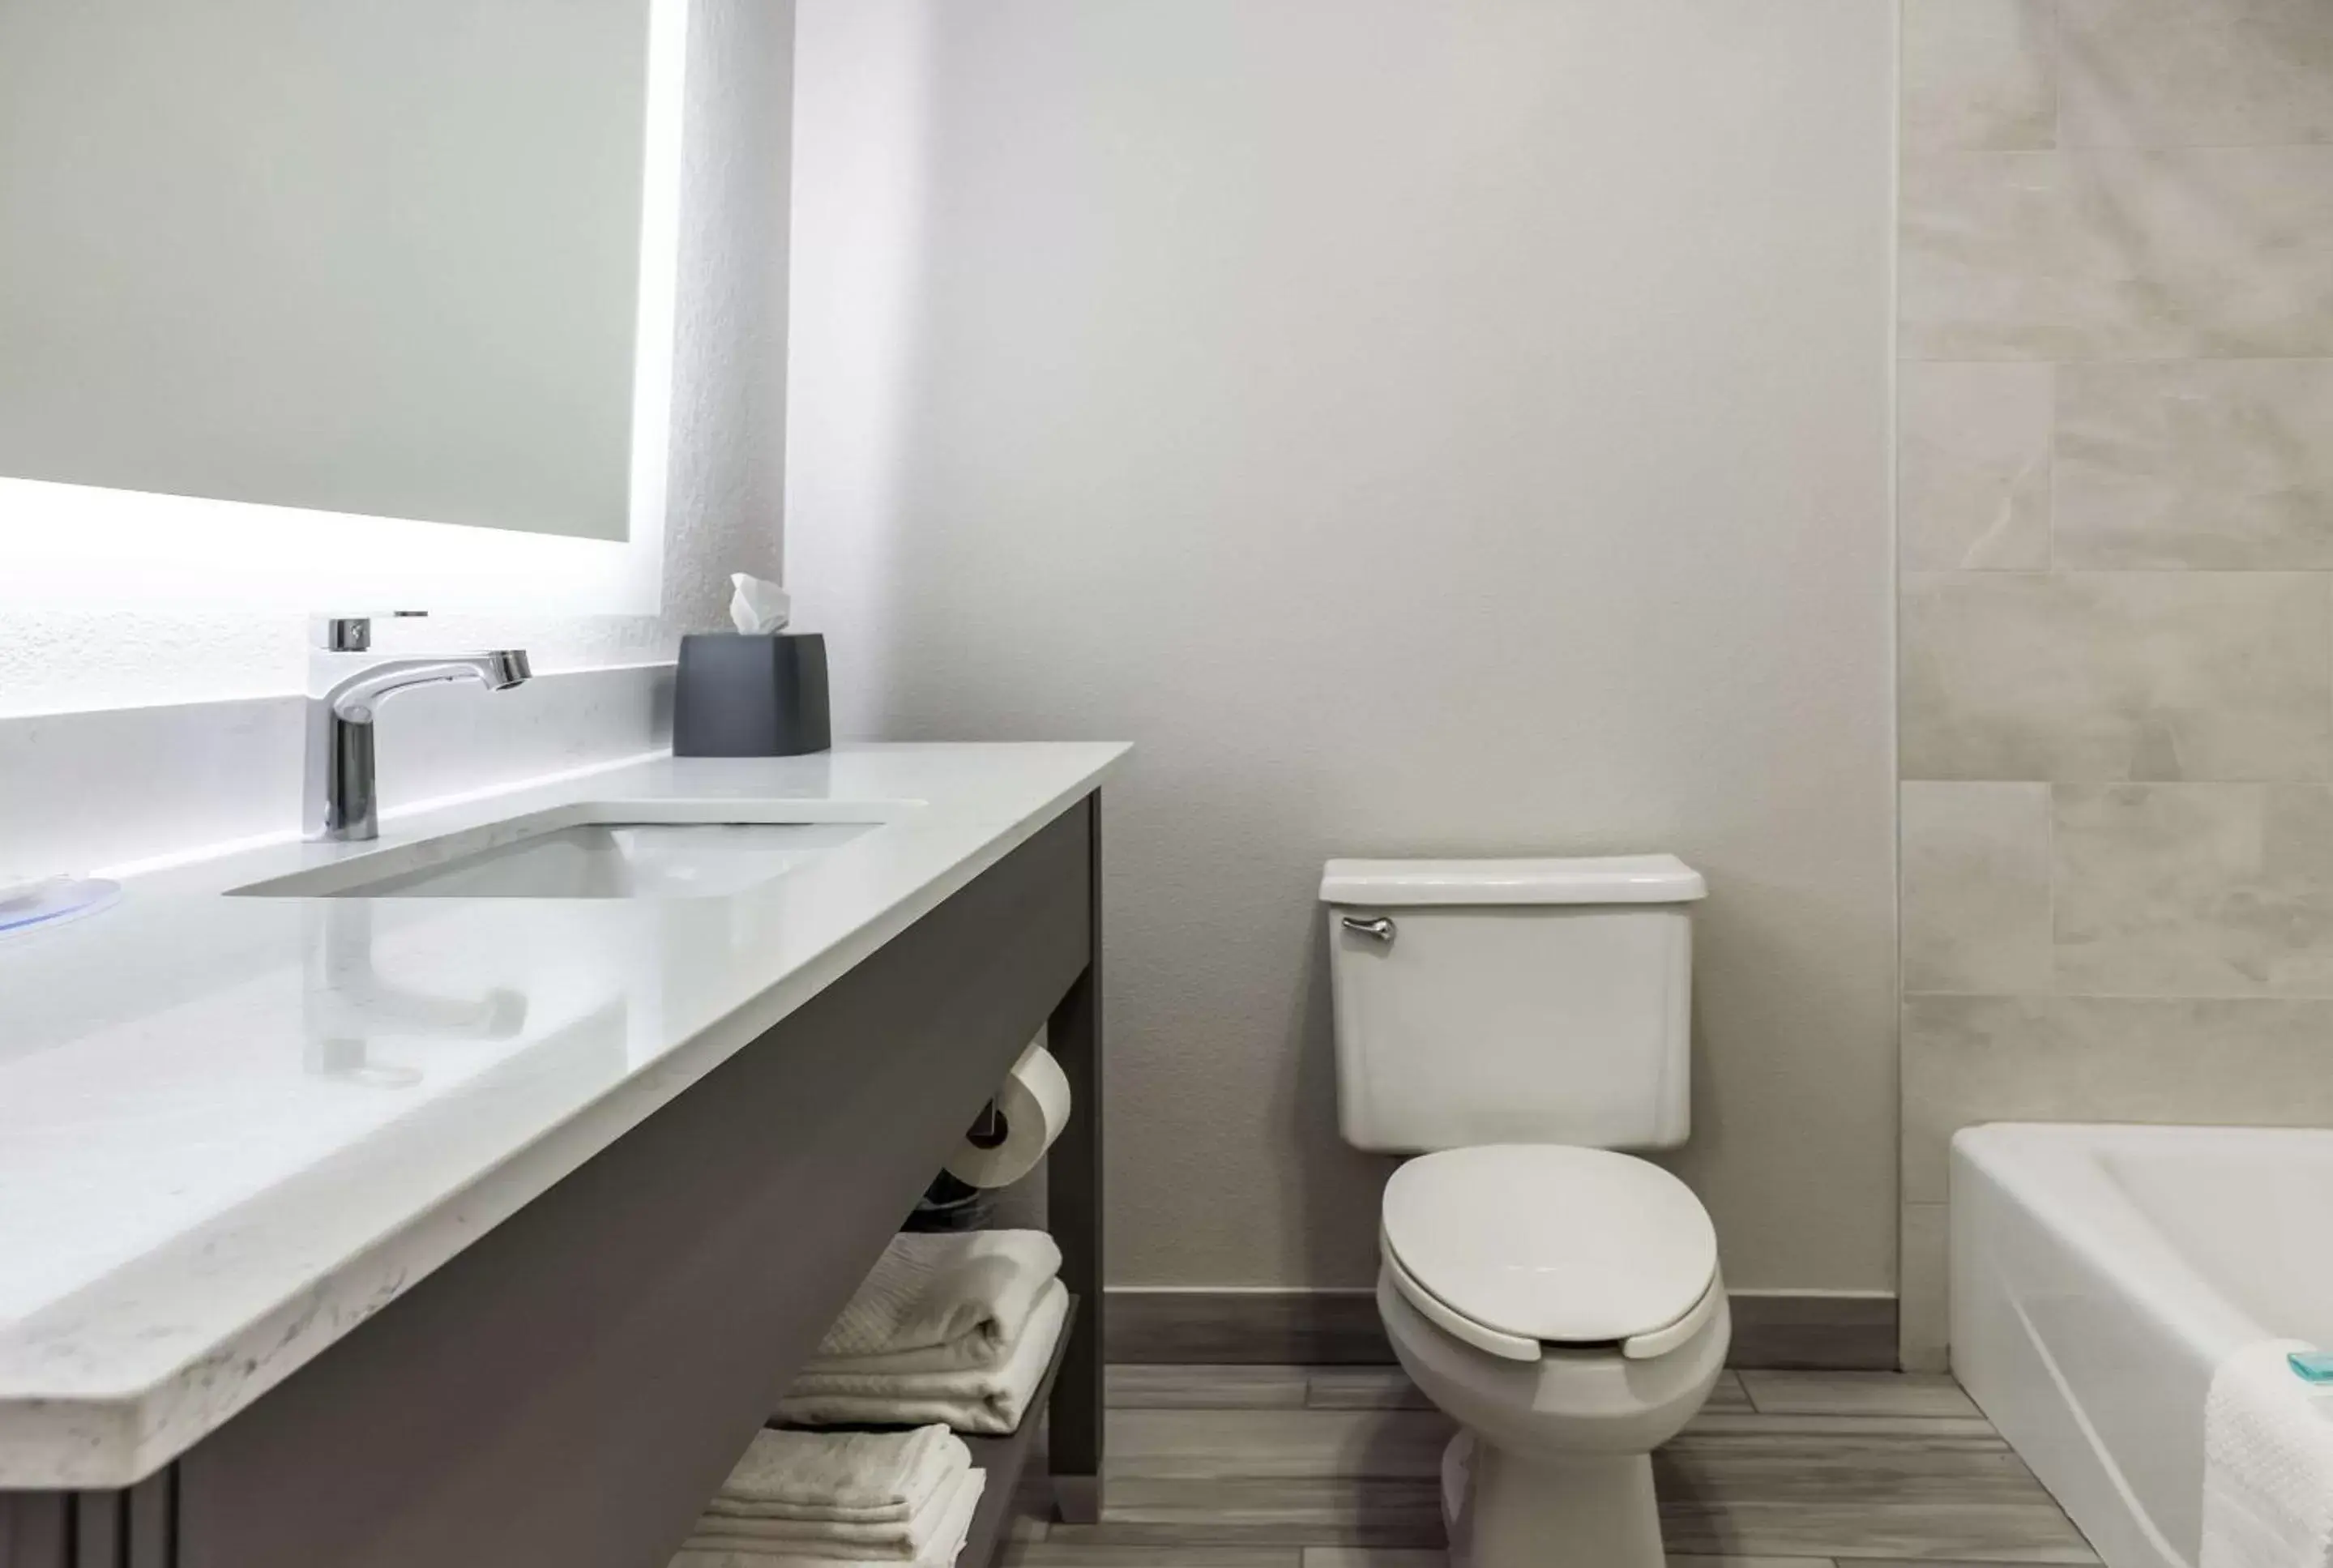 Bedroom, Bathroom in MainStay Suites Bourbonnais - Kankakee